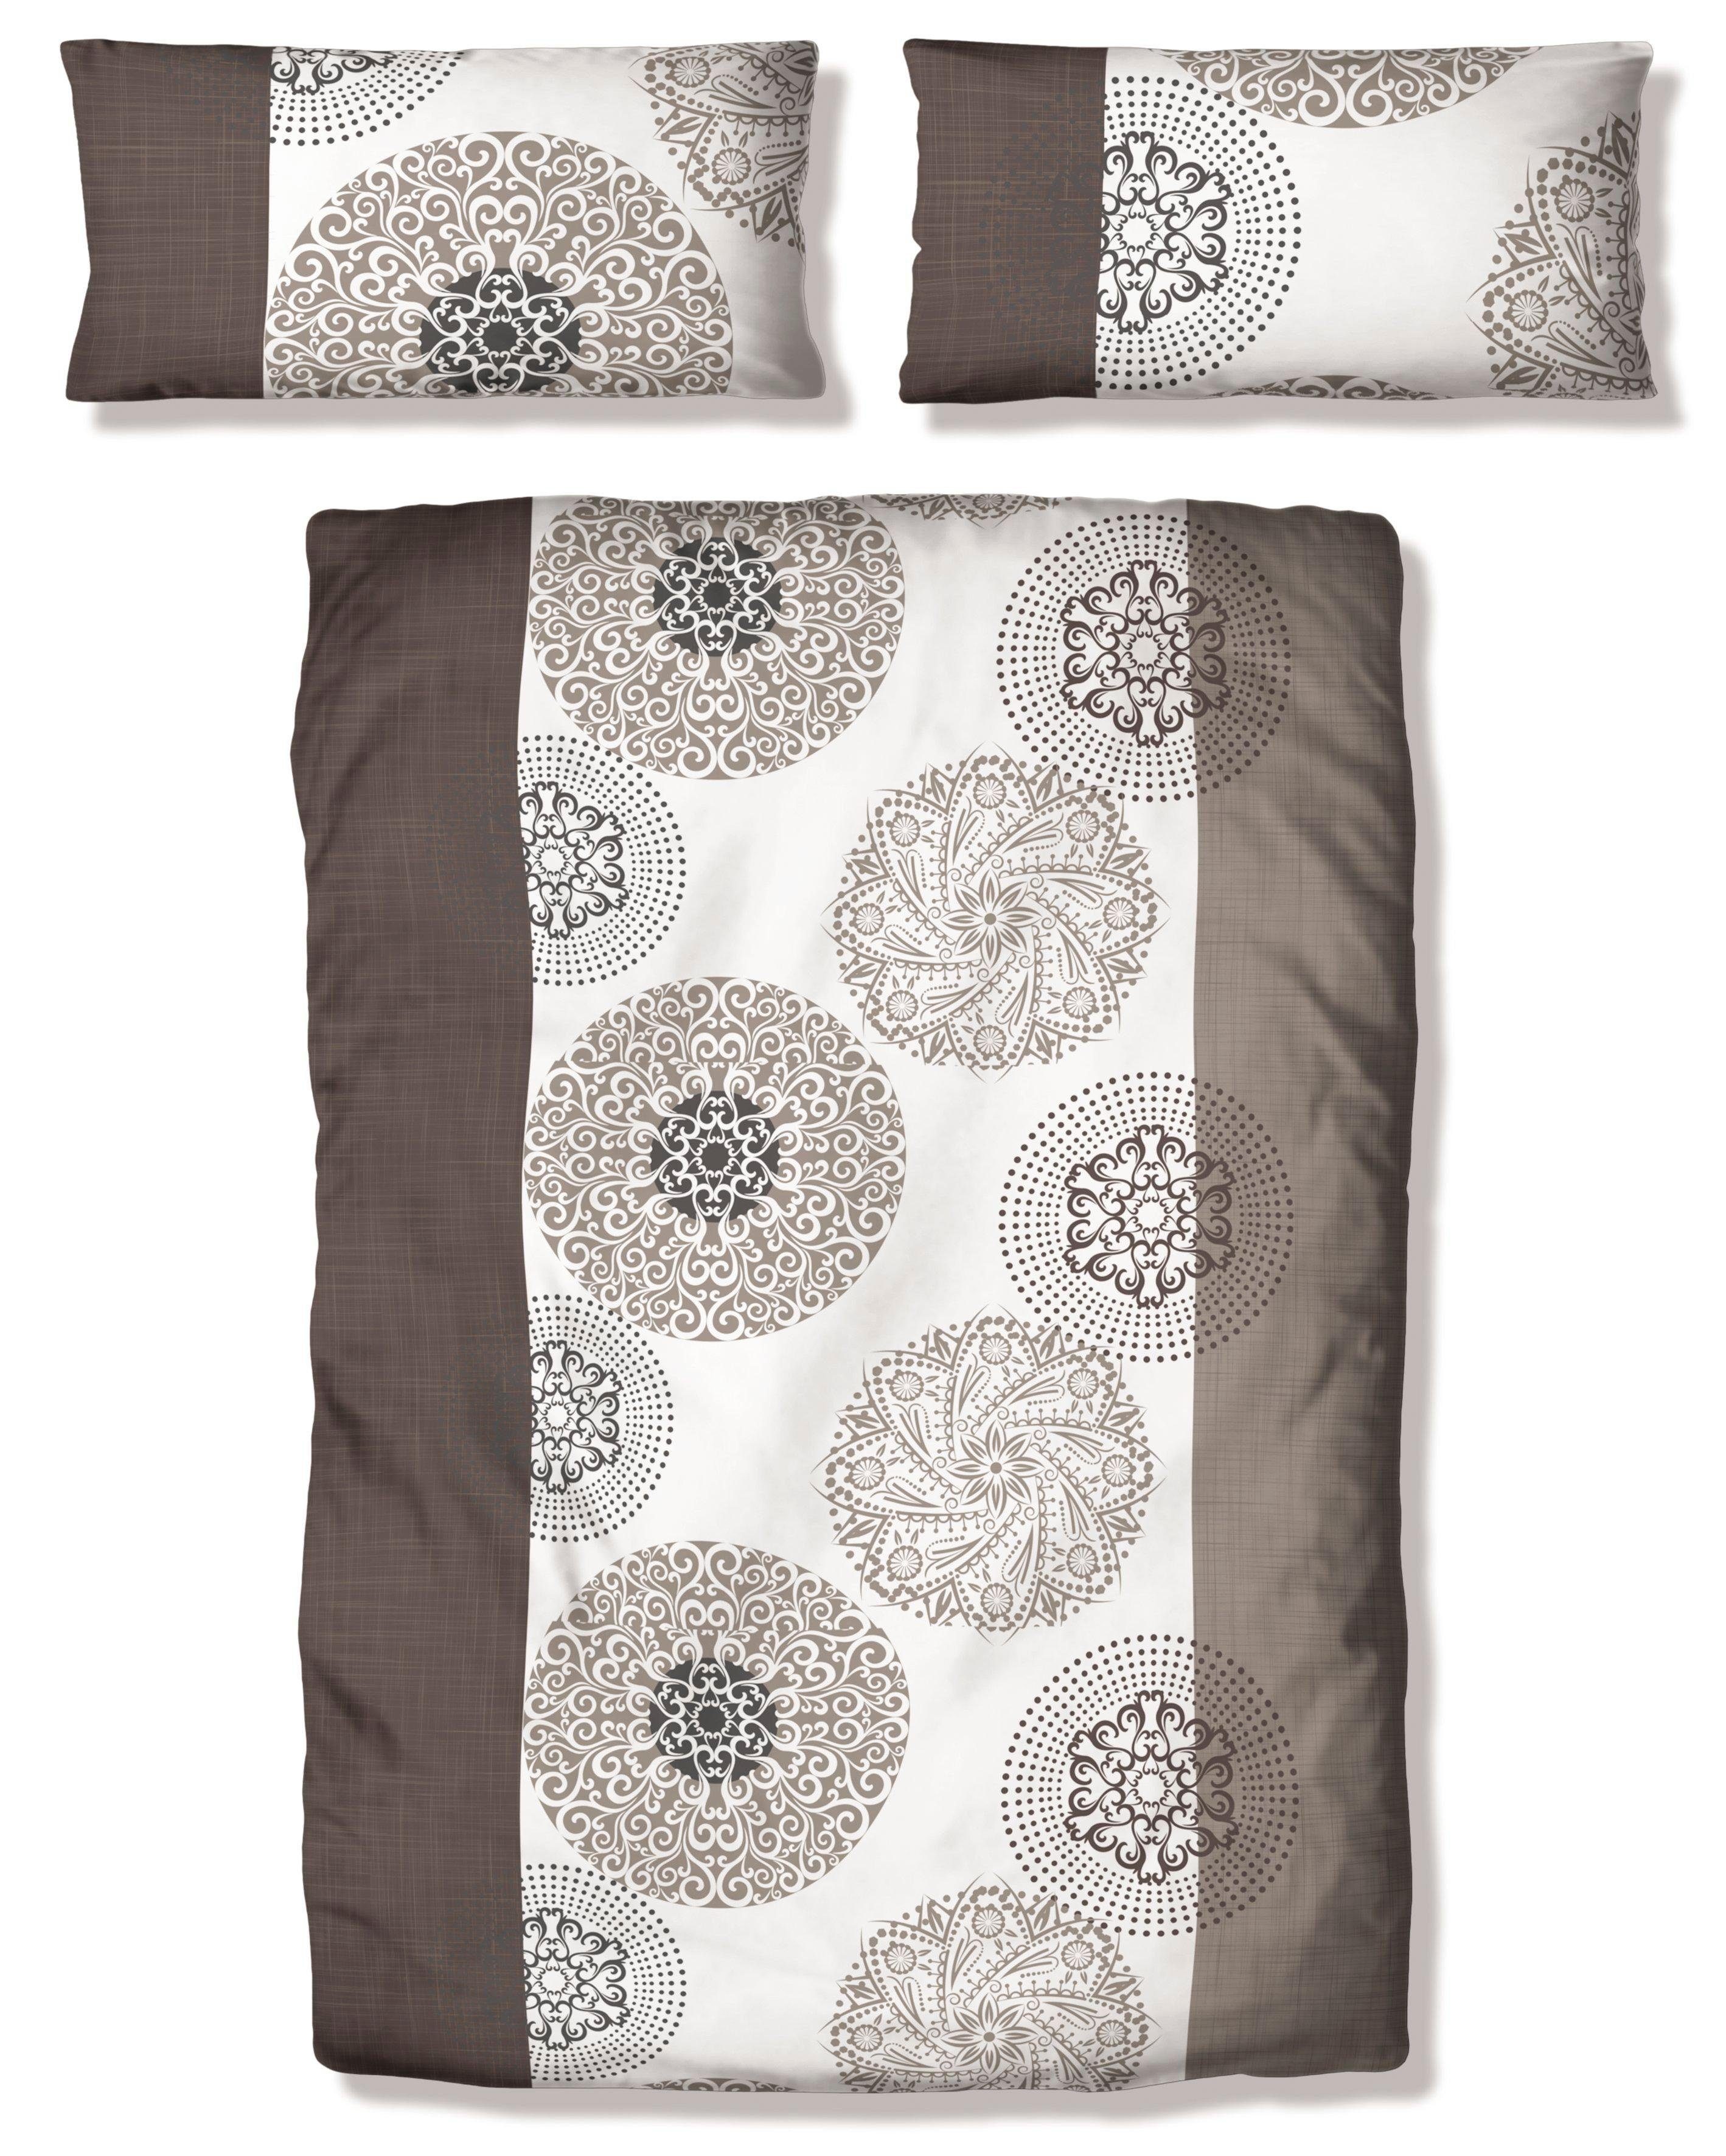 Bettwäsche Cison in Gr. 135x200 oder 155x220 cm, my home, Linon, 2 teilig, florale Bettwäsche aus Baumwolle taupe